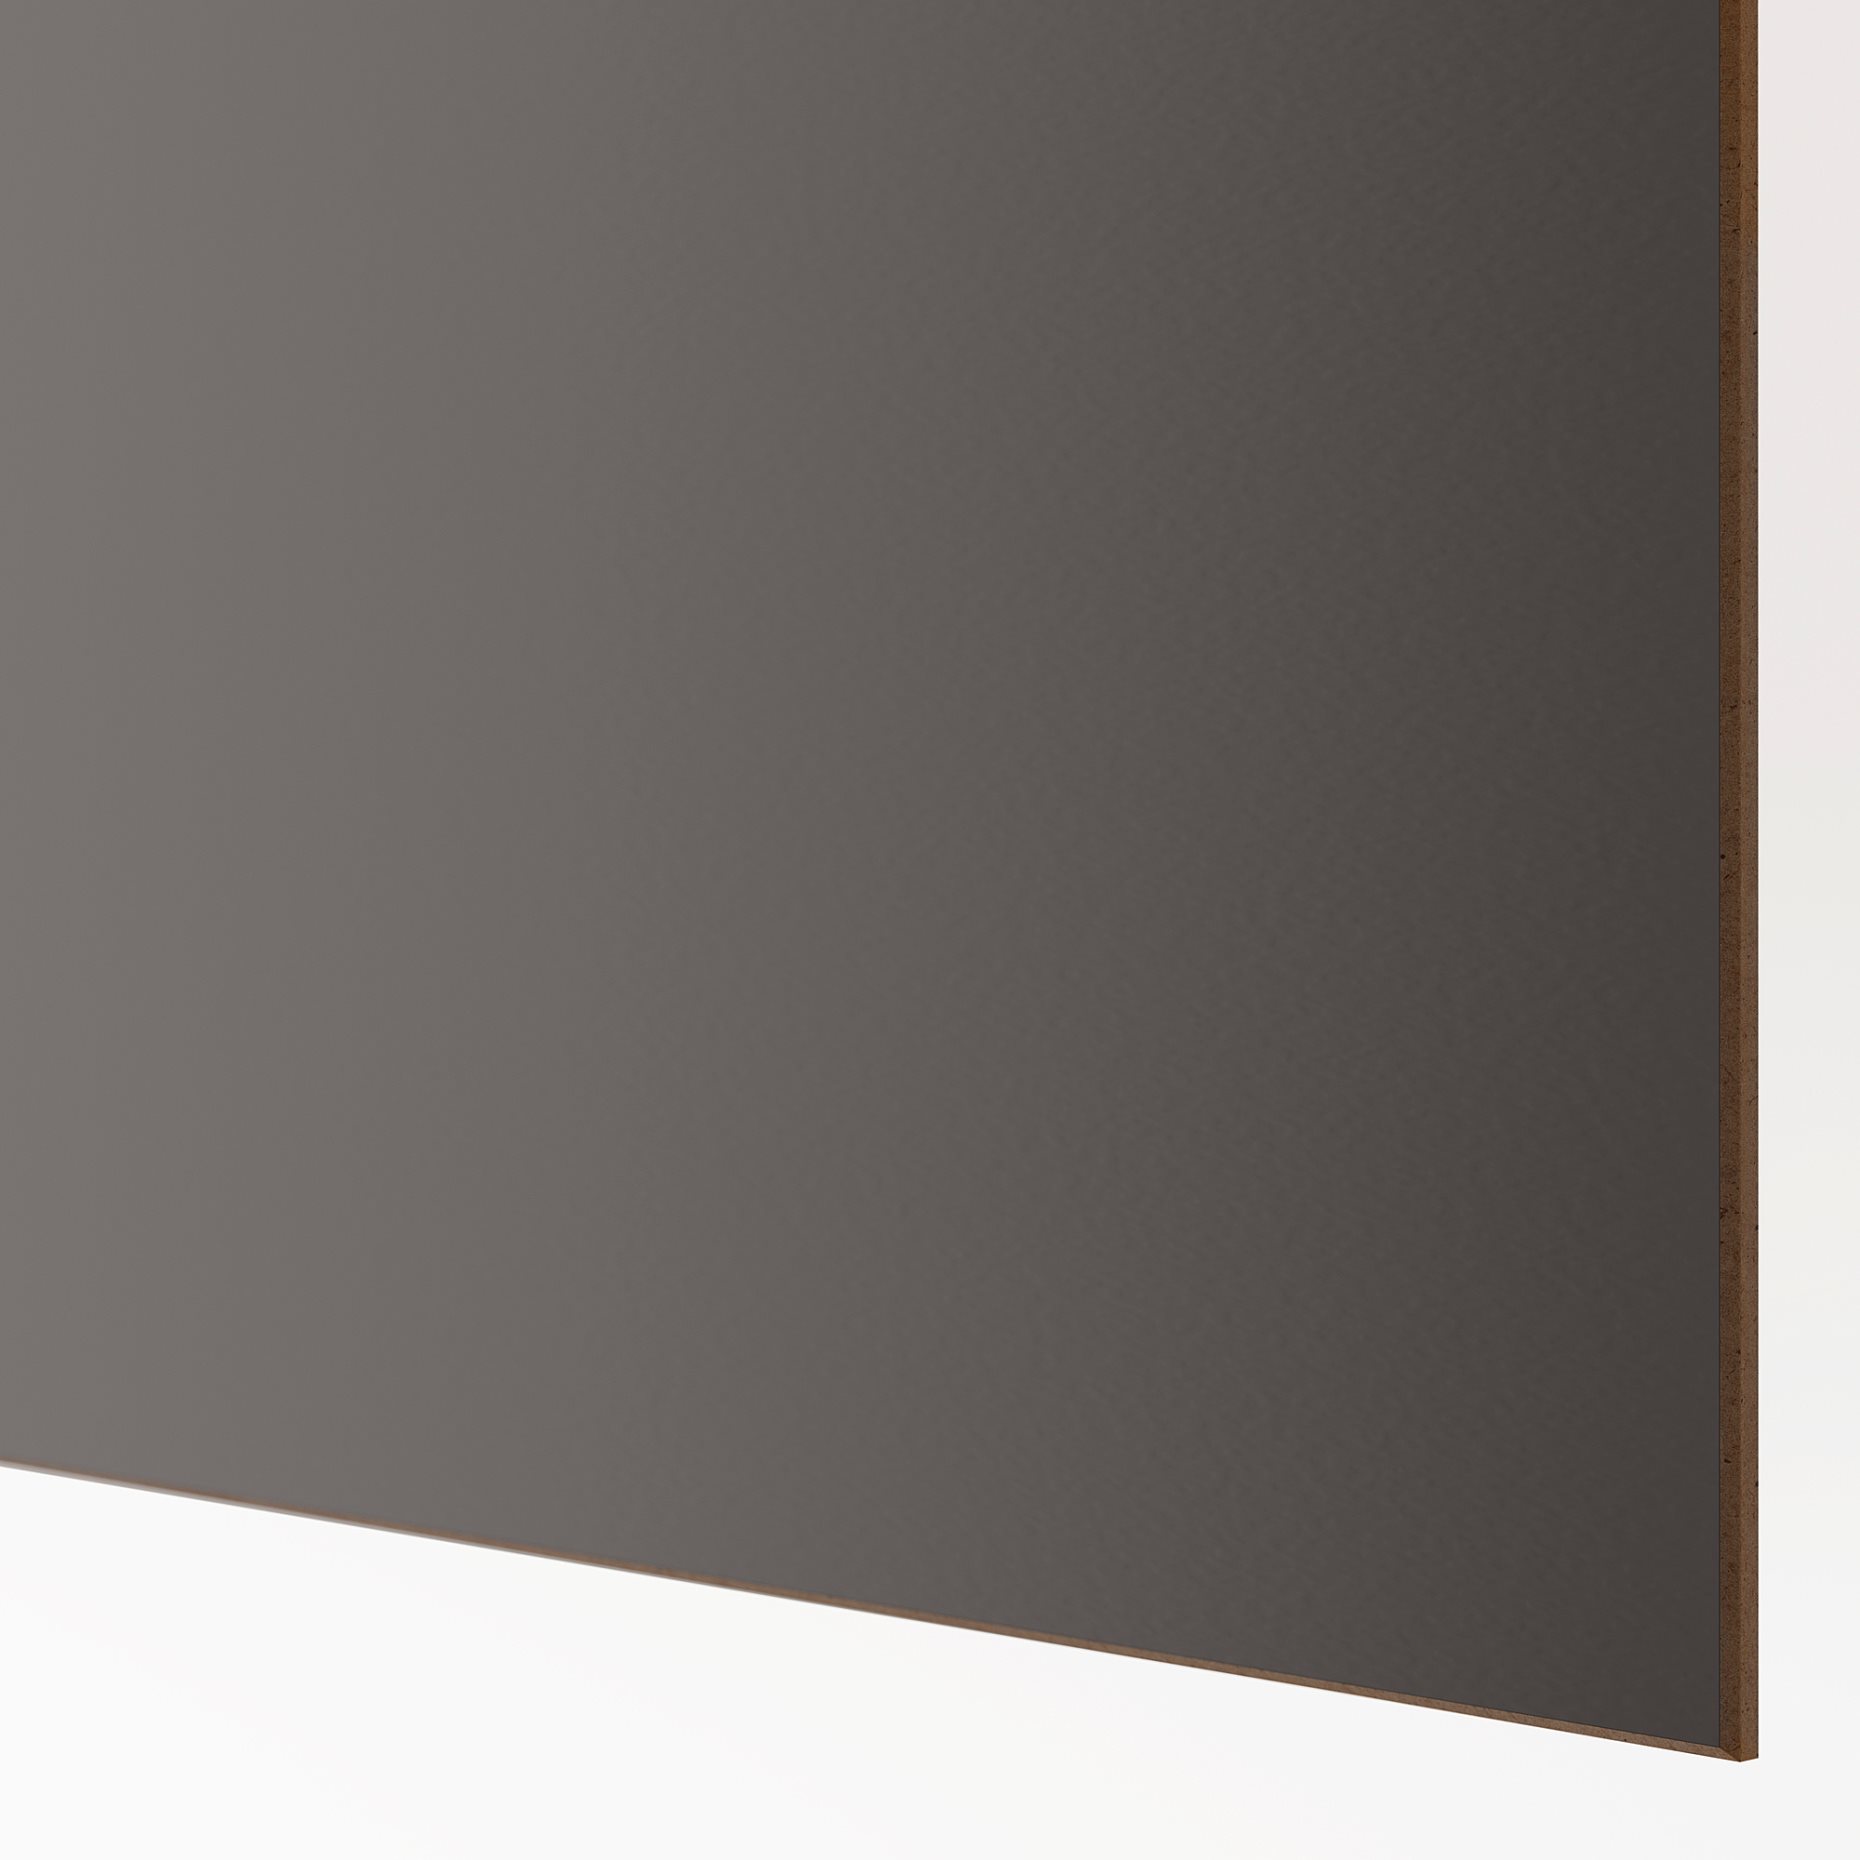 MEHAMN, 4 panels for sliding door frame, 100x201 cm, 805.109.03